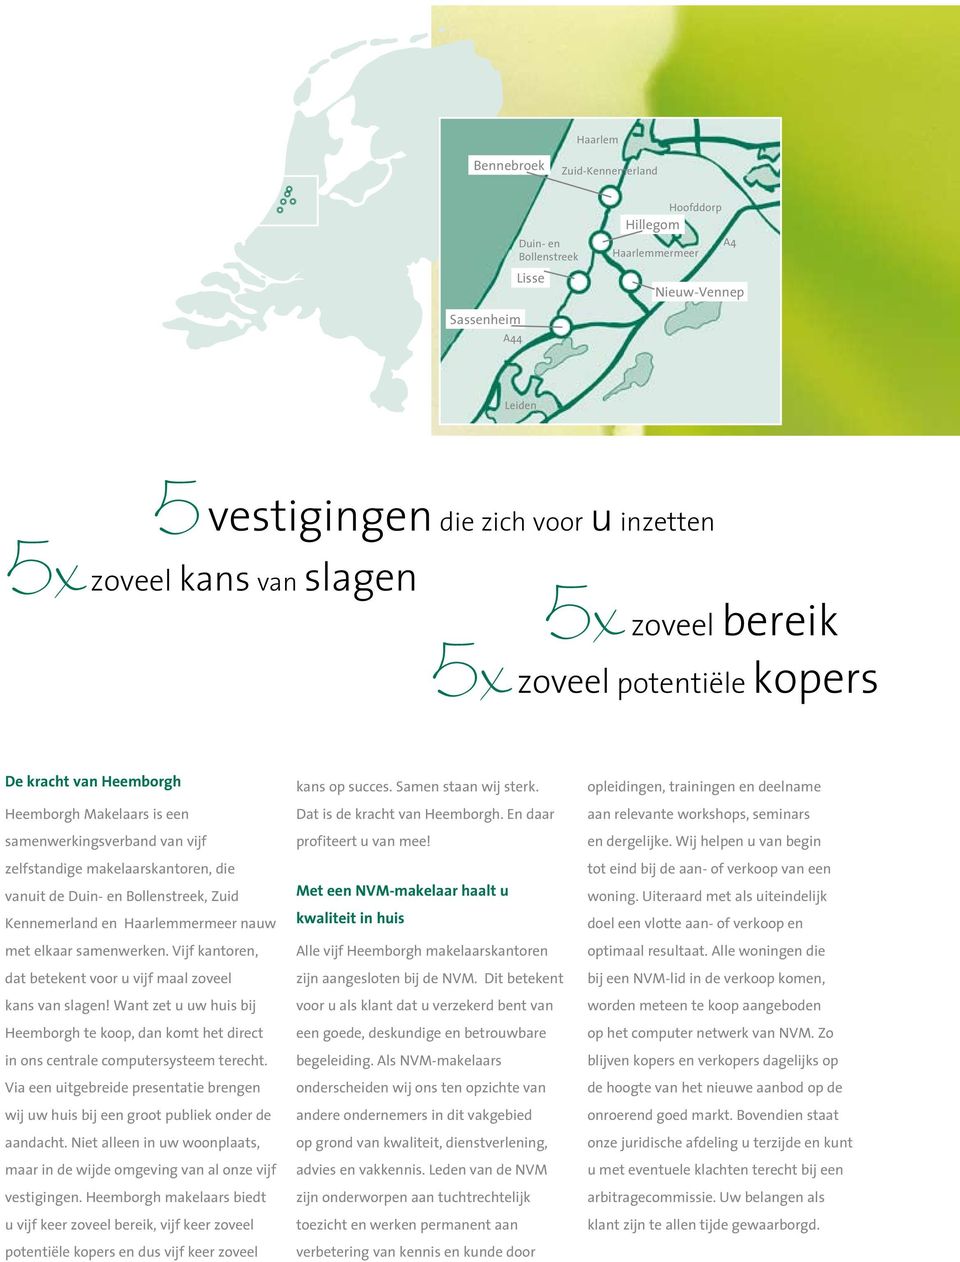 Bollenstreek, Zuid Kennemerland en Haarlemmermeer nauw met elkaar samenwerken. Vijf kantoren, dat betekent voor u vijf maal zoveel kans van slagen!